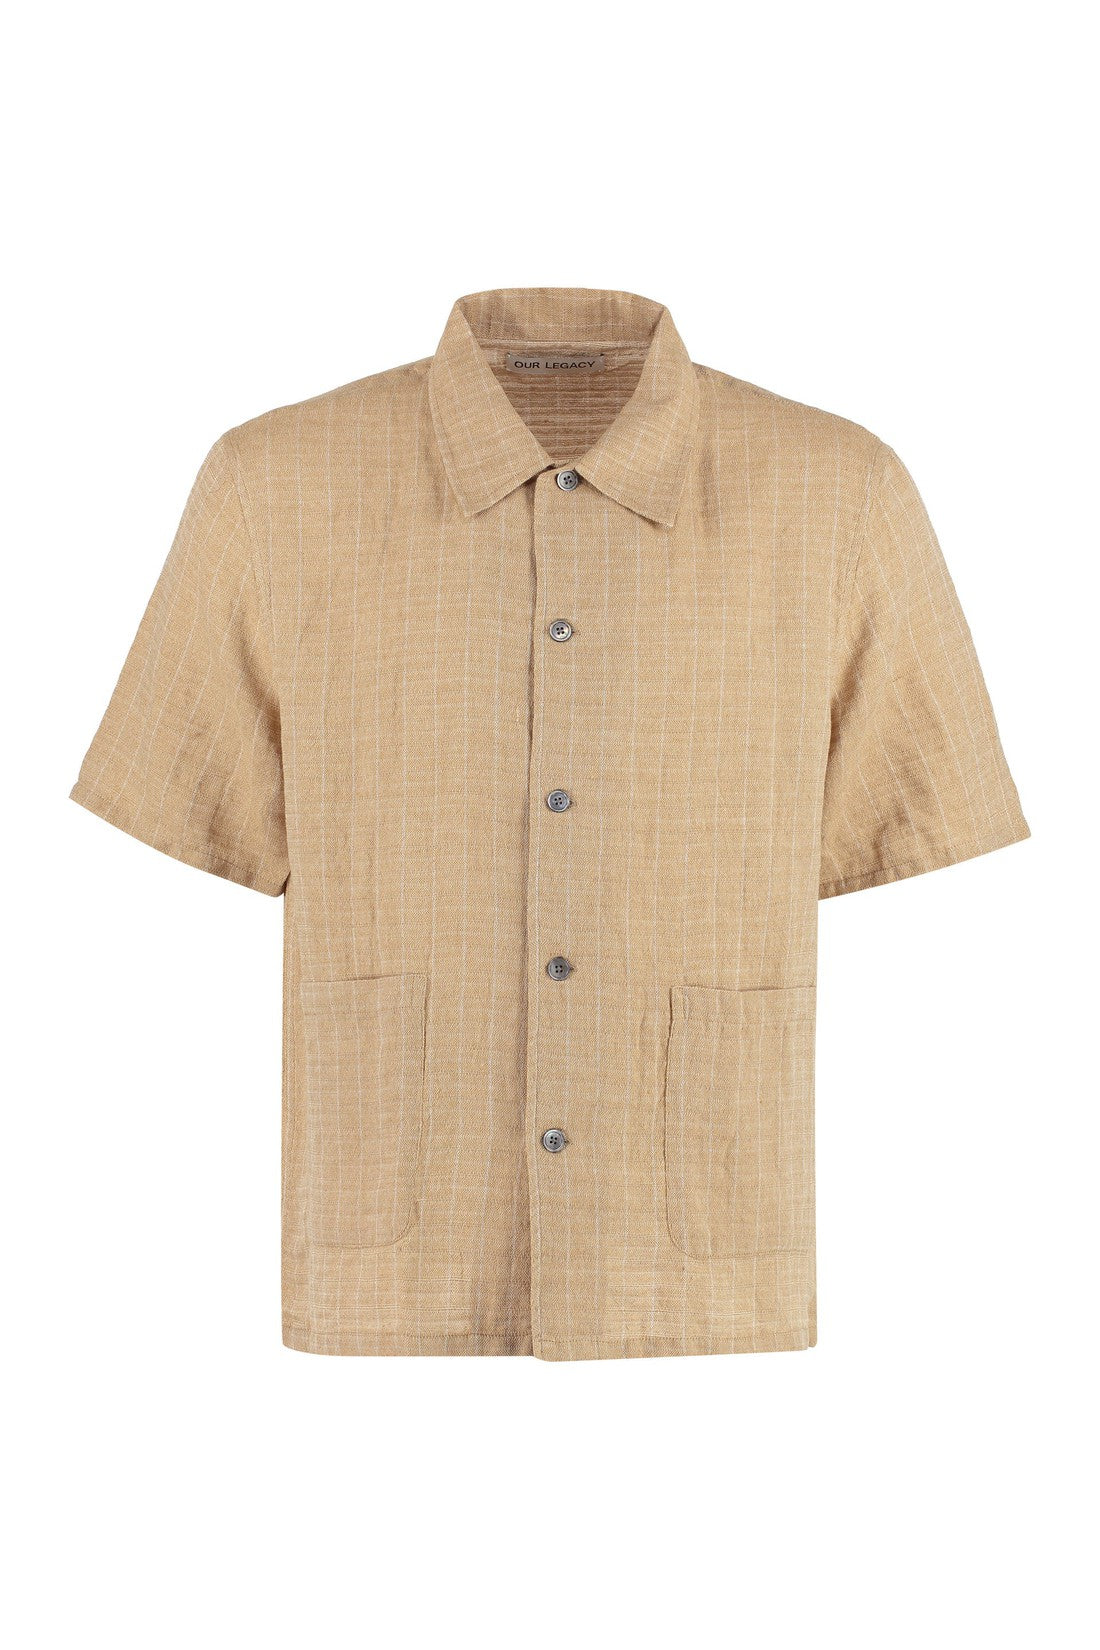 Our Legacy-OUTLET-SALE-Elder linen shirt-ARCHIVIST